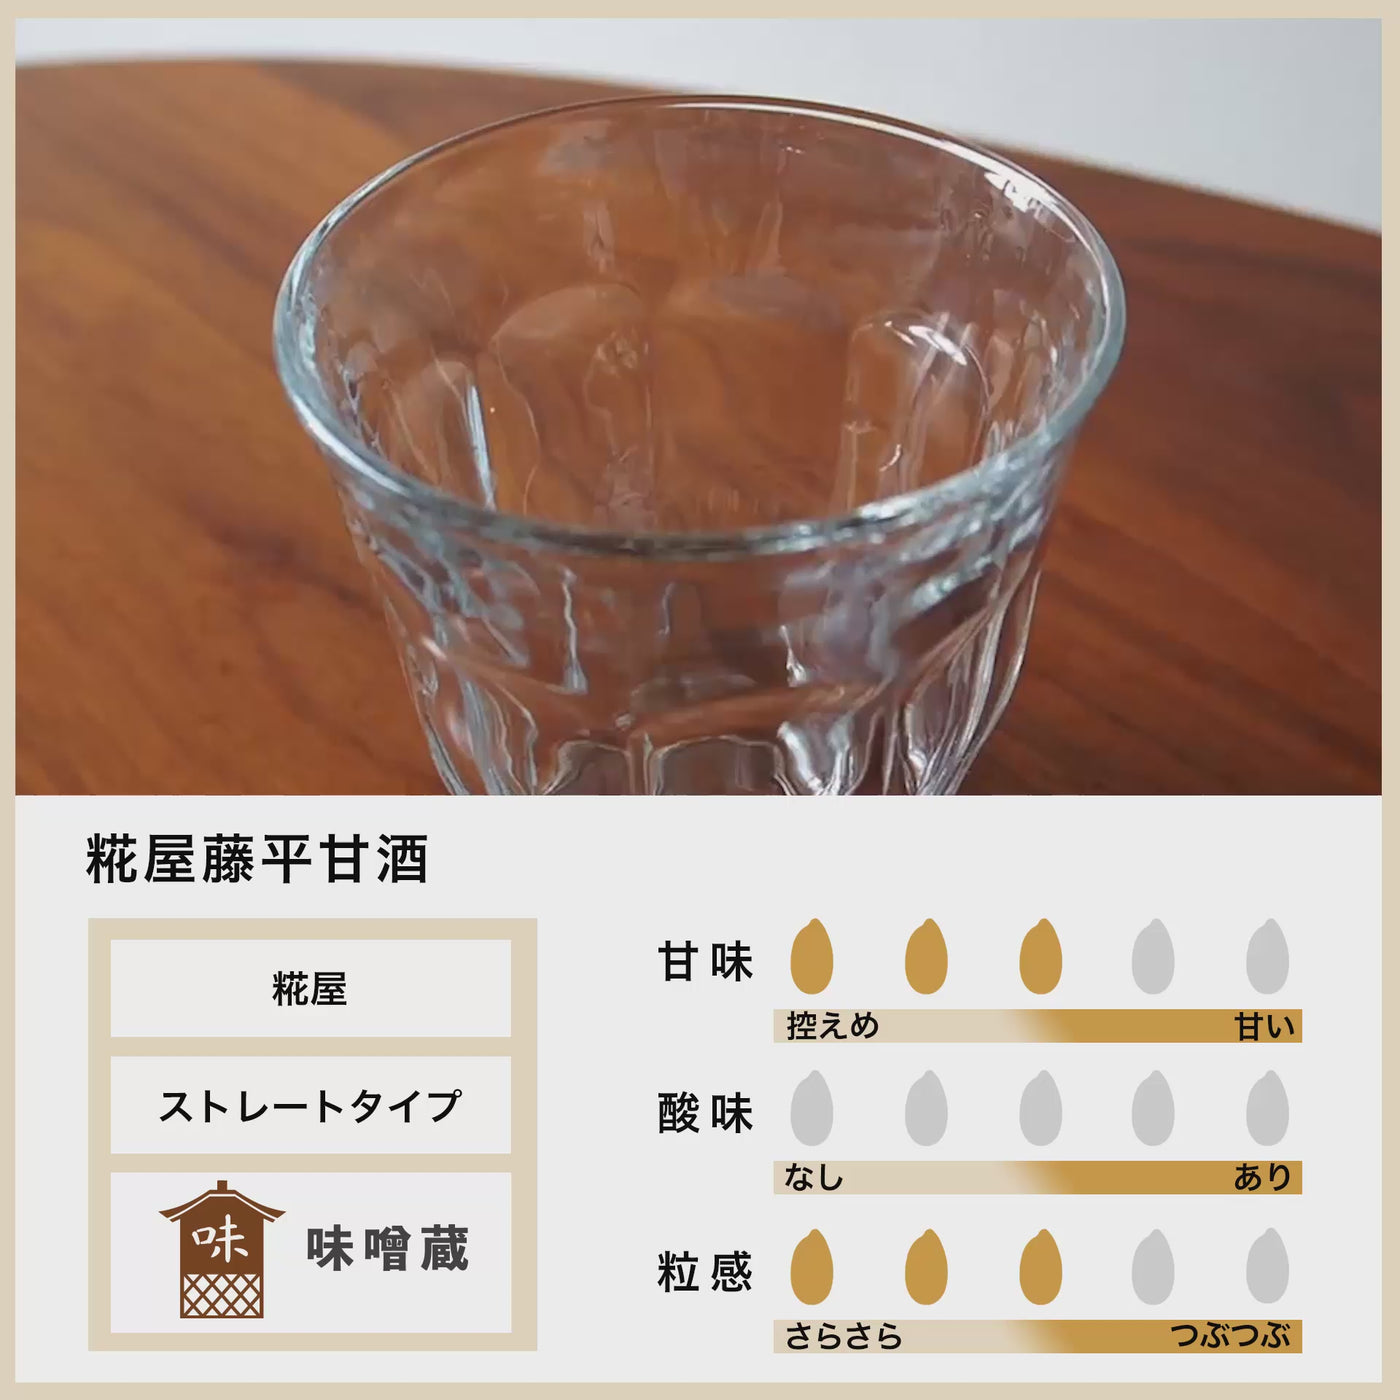 [Großkauf] Kojiya Tohei Amazake 720 ml 6-Flaschen-Set